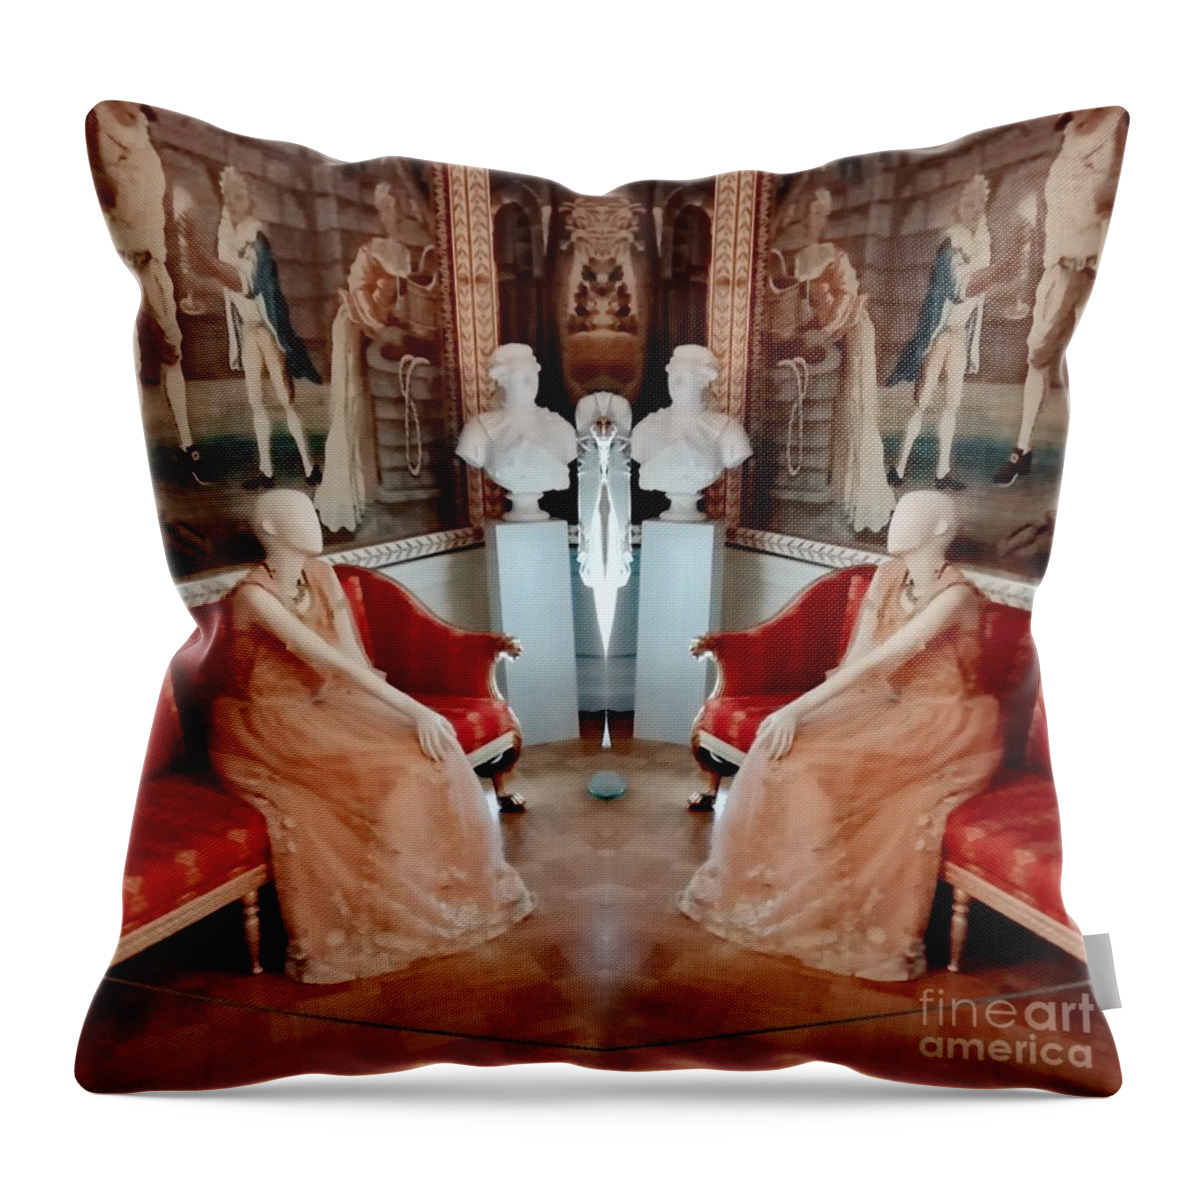 Camera Art Throw Pillow featuring the digital art At the Castle by Alexandra Vusir